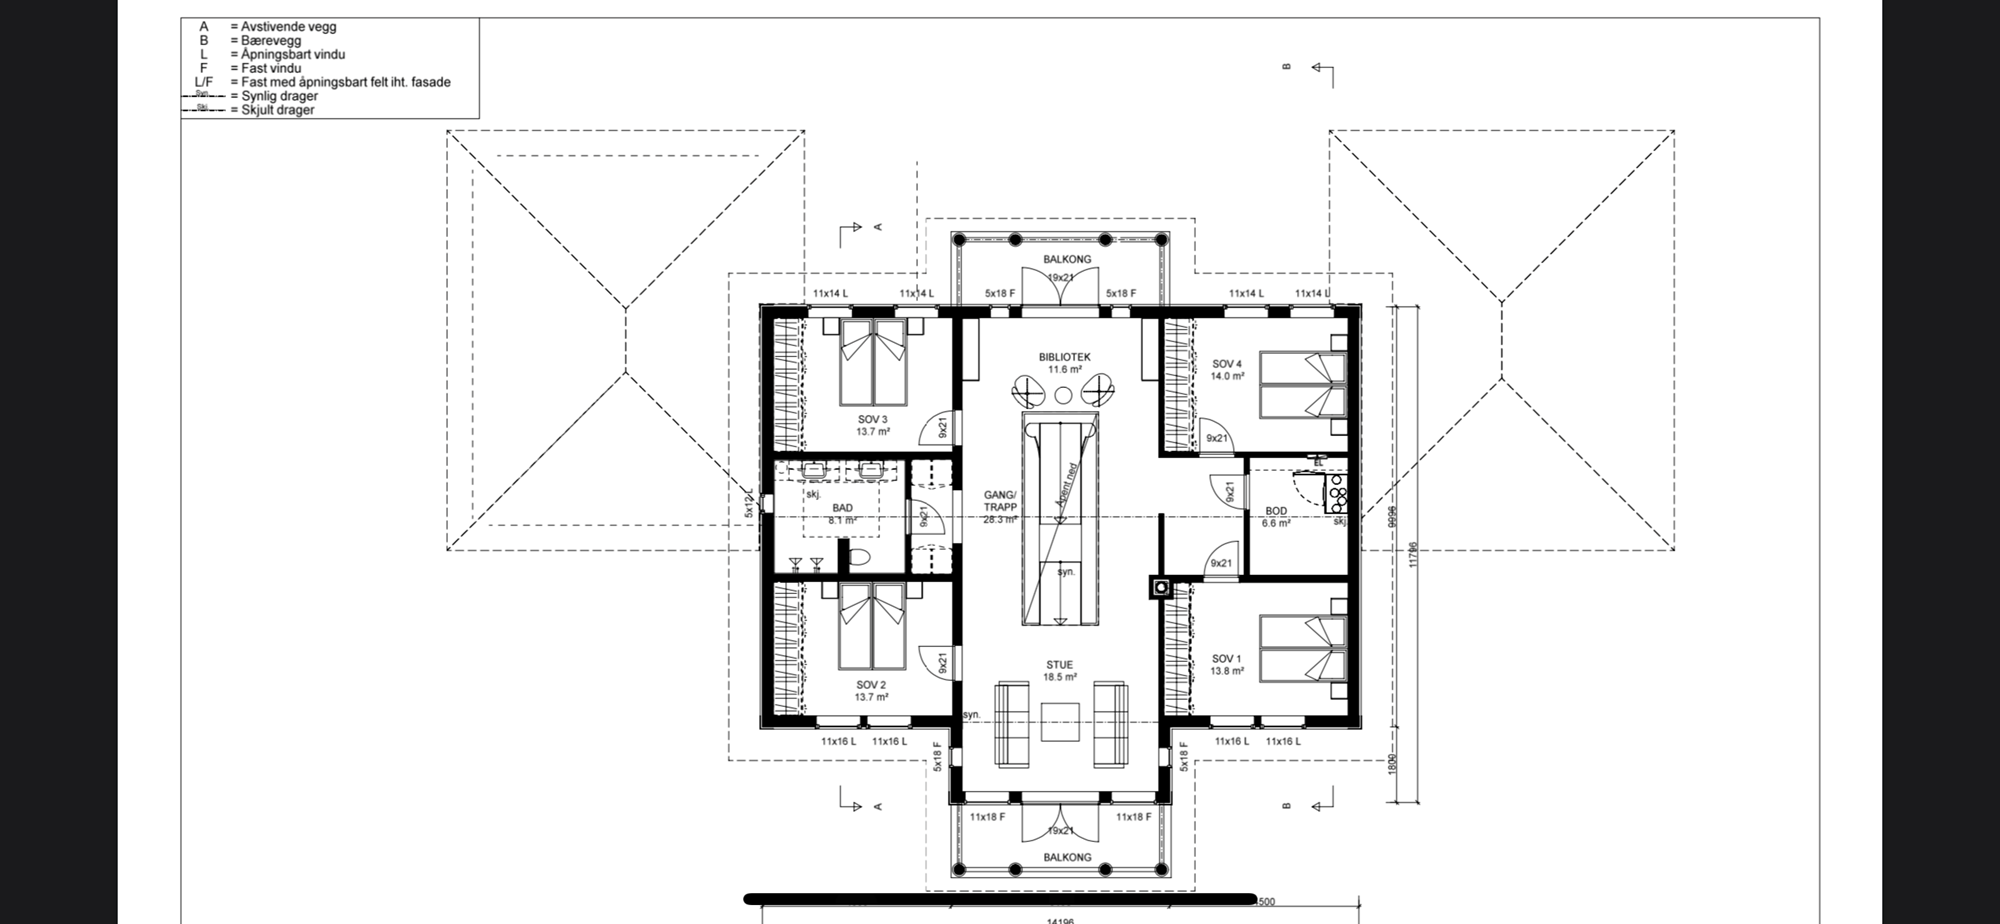 Prosjekt nytt herskapelig hovedhus på gård - C2AE9EED-AD5D-4A31-B1B5-51C2B3B392EA.png - Gårdskaren